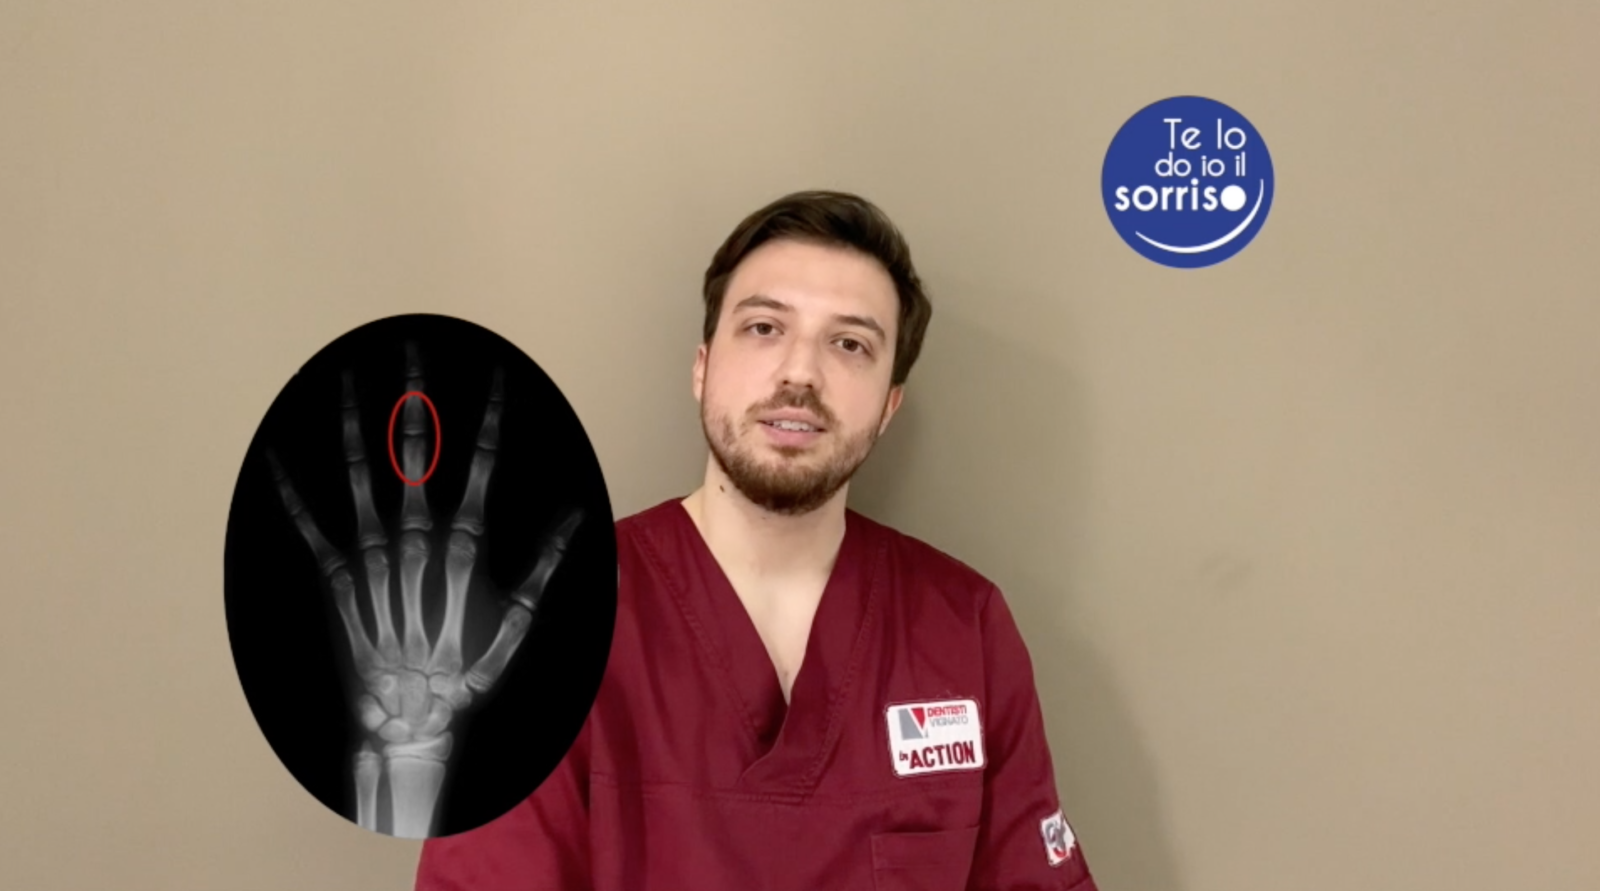 La radiografia al terzo dito della mano in ortodonzia